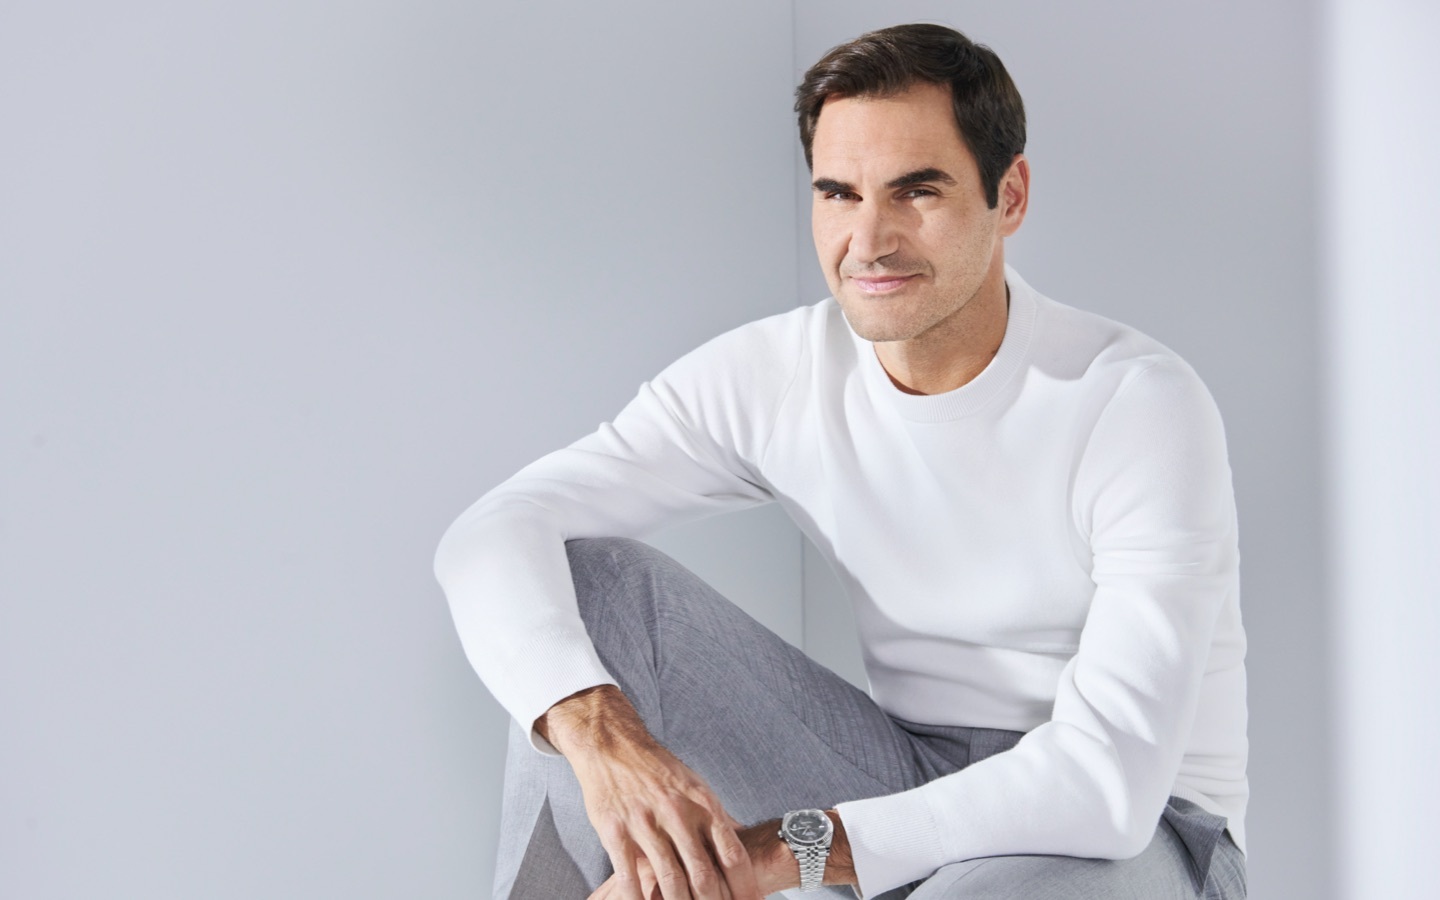 Roger Federer, tennis legend and Rolex ambassador